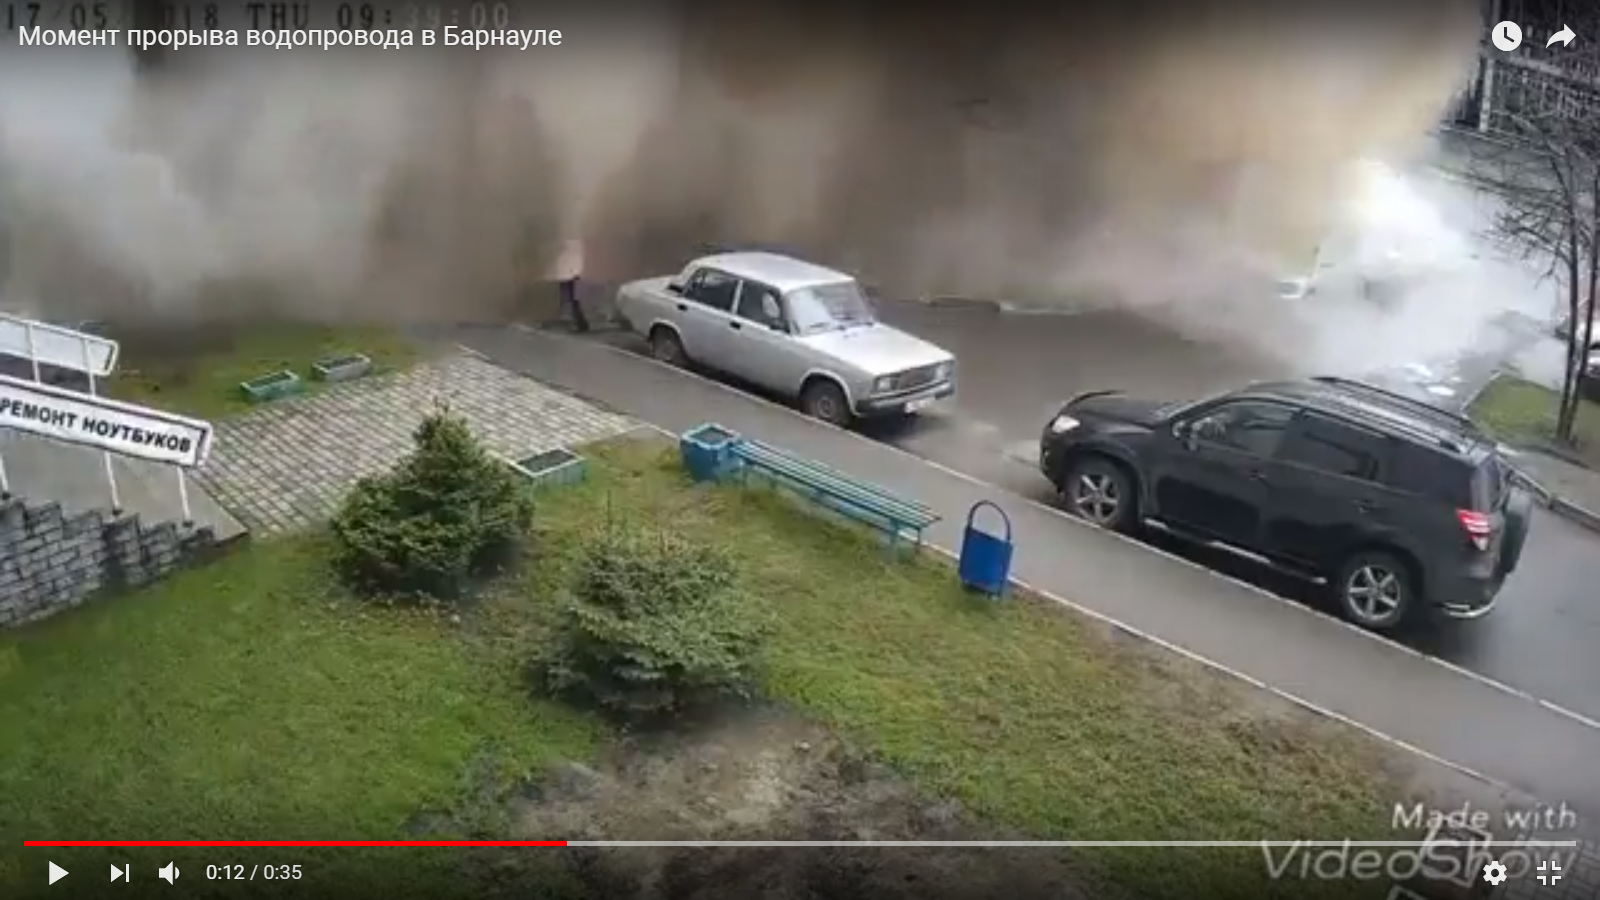 Видео: жительницу Барнаула сбил поток водопроводной воды